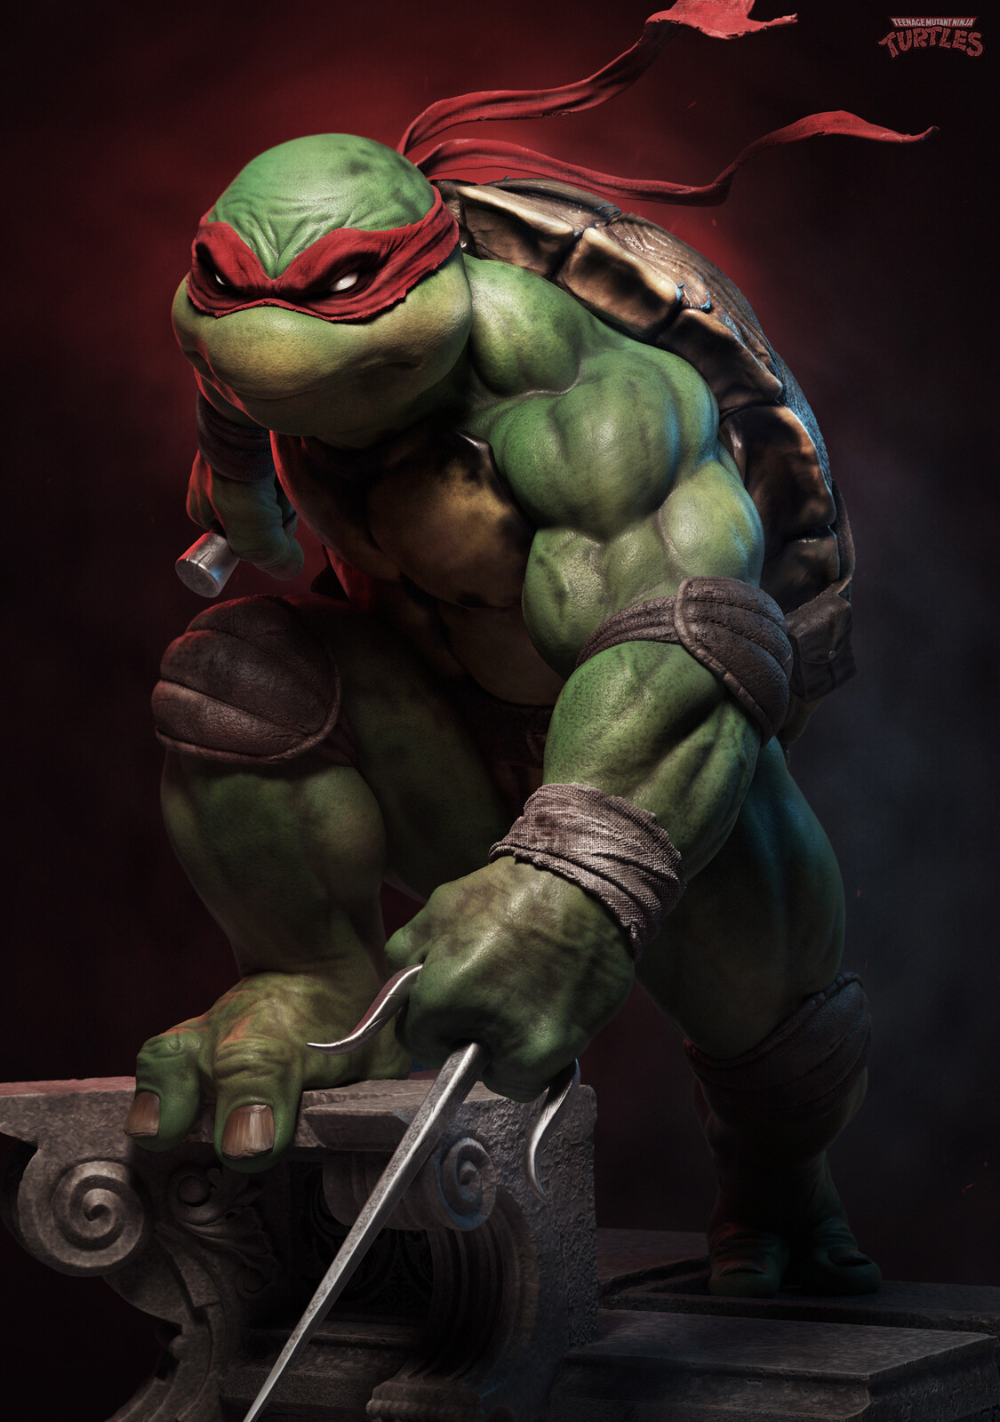 Teenage mutant ninja turtles artco.com